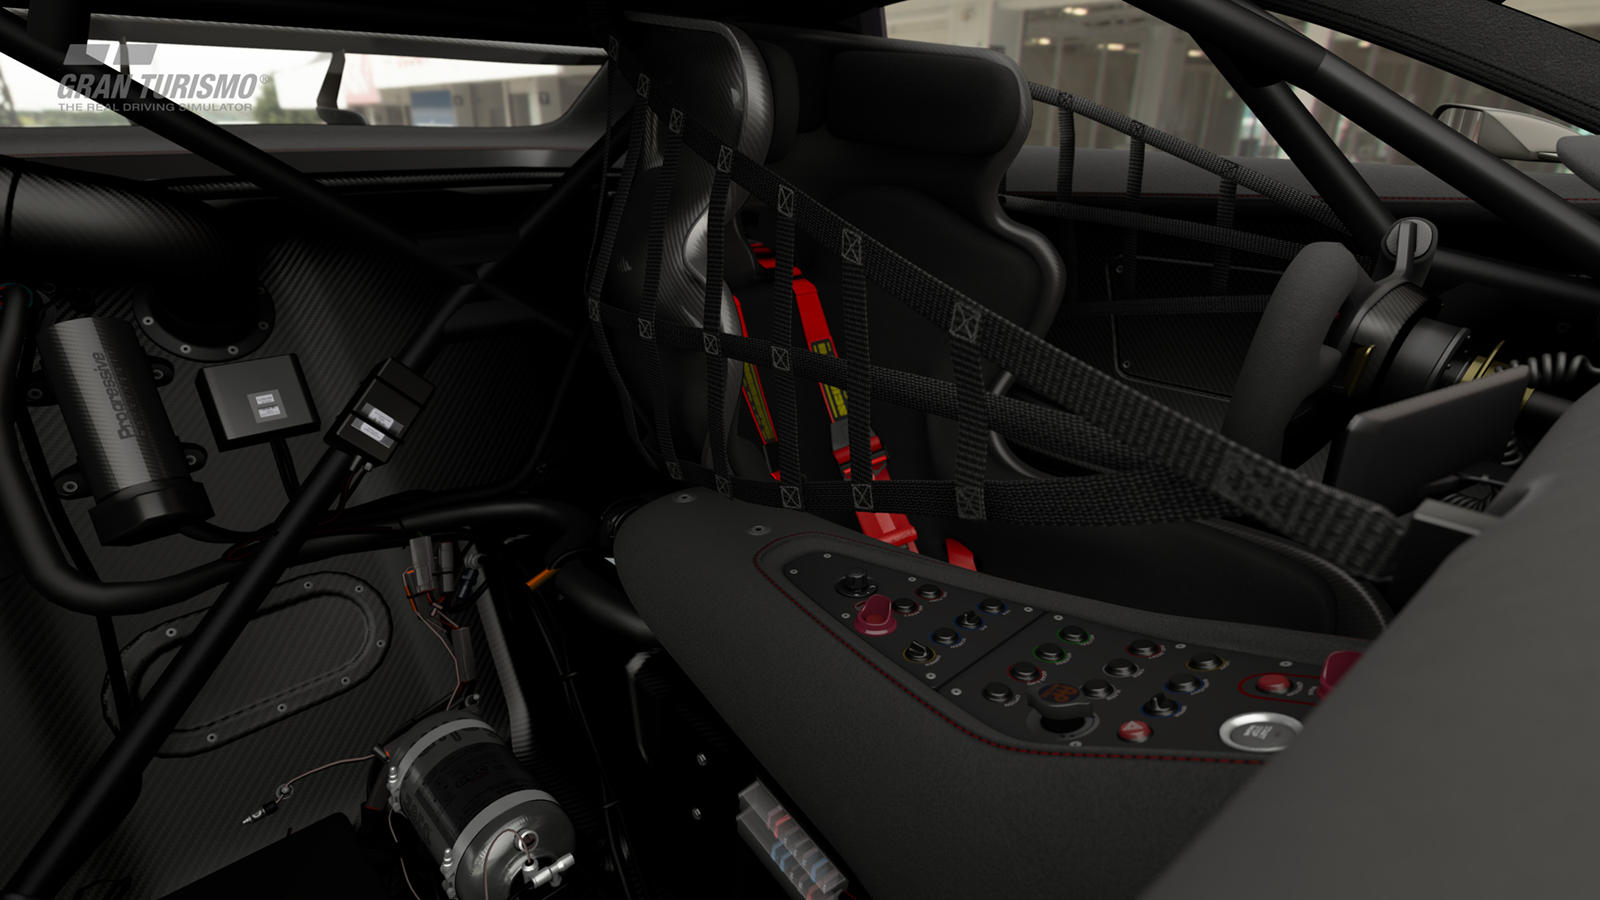 Разработанный в сотрудничестве с Polyphony Digital Inc., концепт Mazda RX-Vision GT3 дебютирует в видеоигре Gran Turismo Sport 22 мая 2020 года. Эта более экстремальная, ориентированная на трек версия RX-Vision объединяет в себе другие творения, сдел